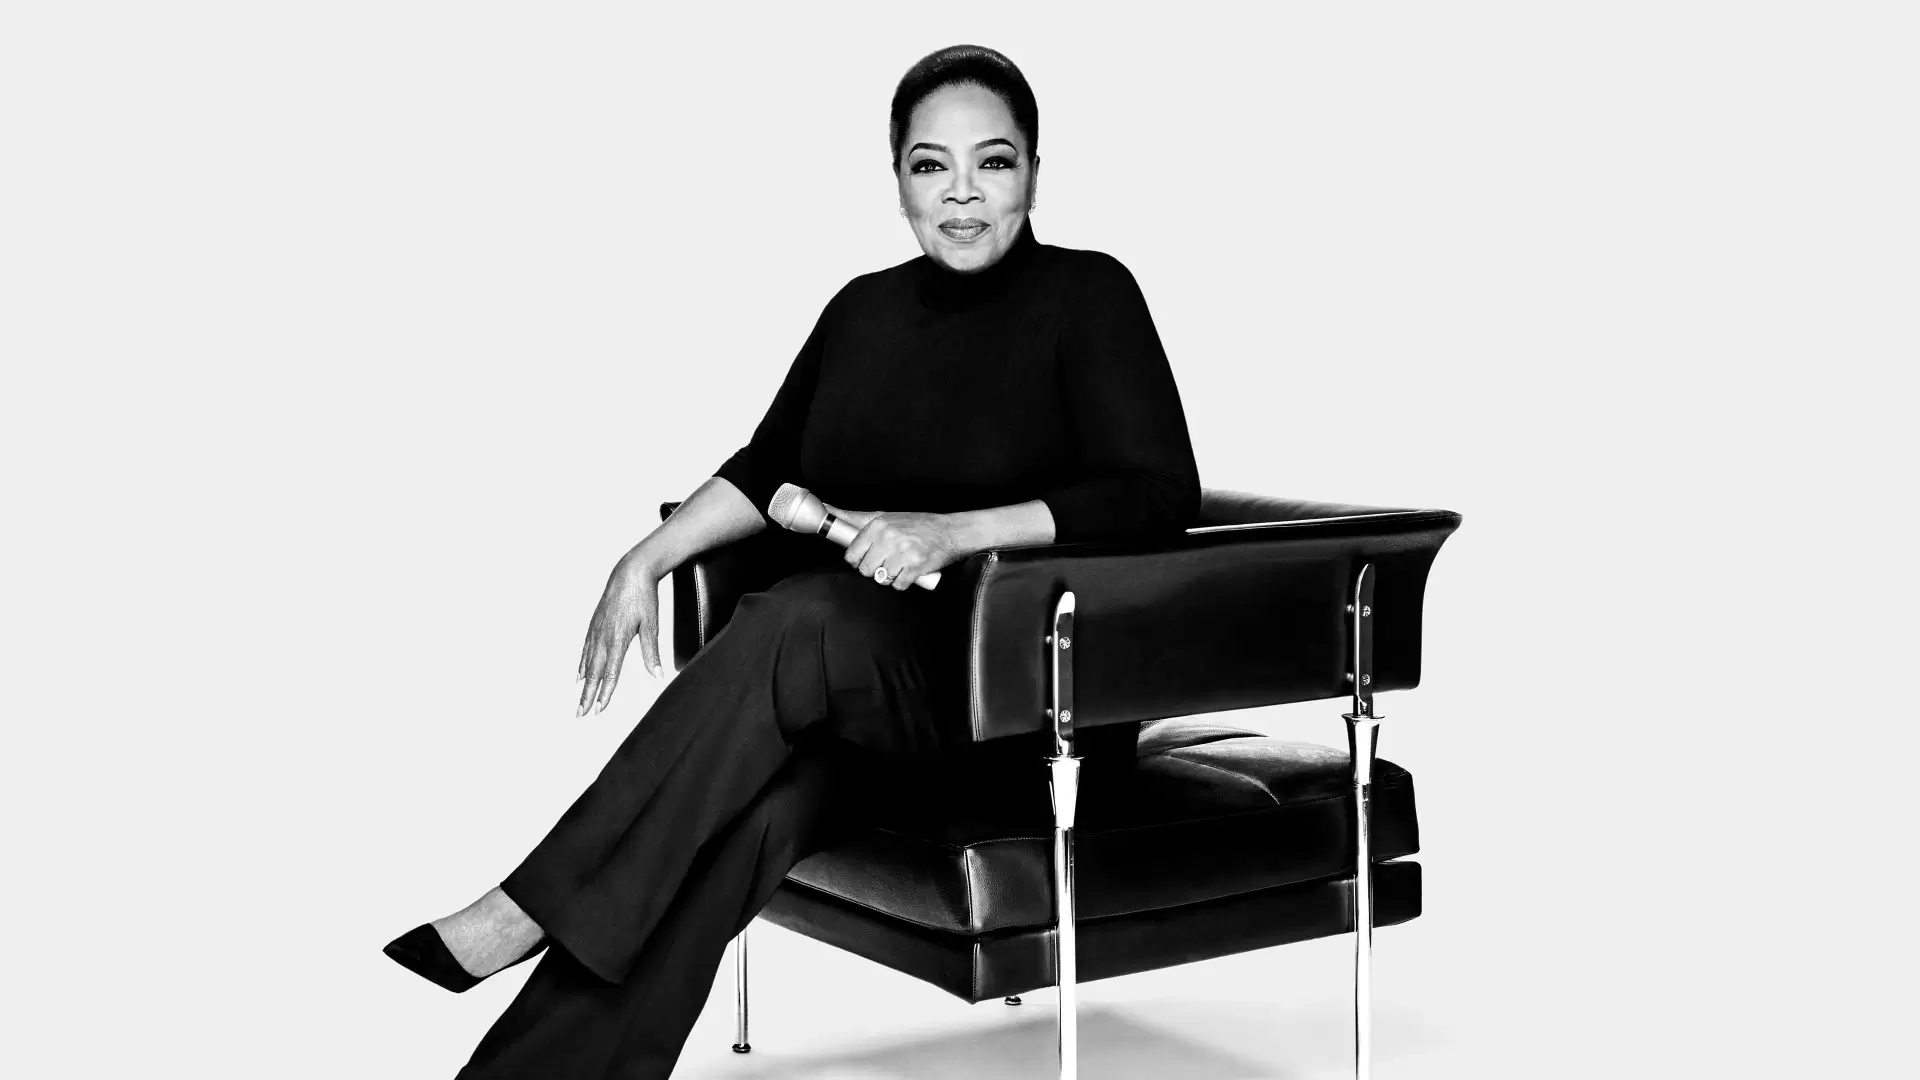 دانلود مستند The Oprah Conversation 2020 (مصاحبه با اپرا)